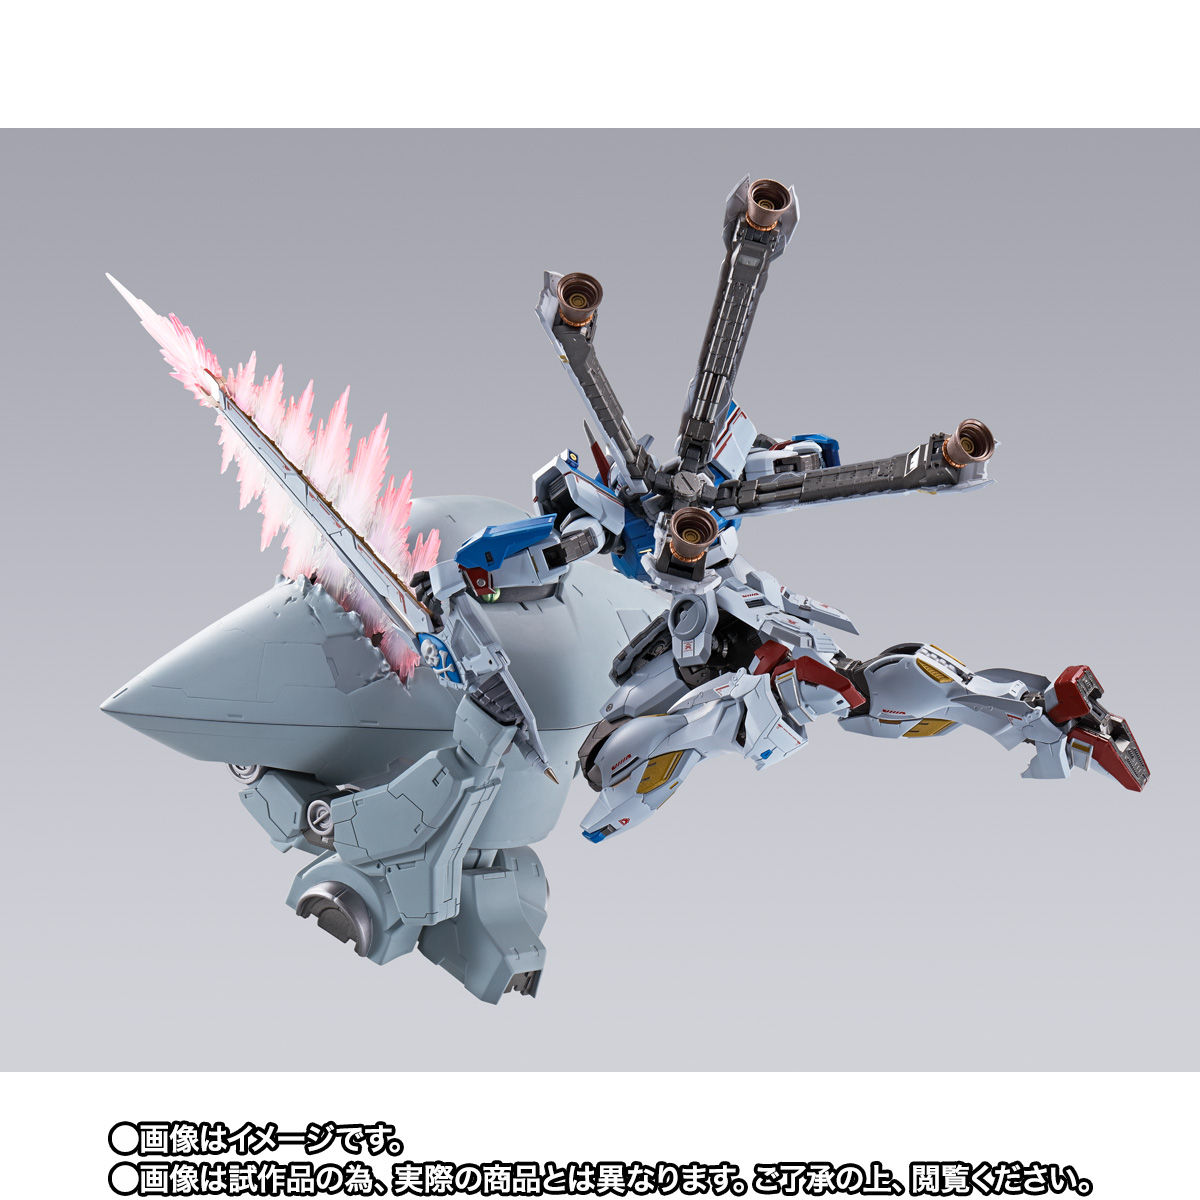 【限定販売】METAL BUILD『クロスボーン・ガンダムX3』機動戦士クロスボーン・ガンダム 可動フィギュア-006